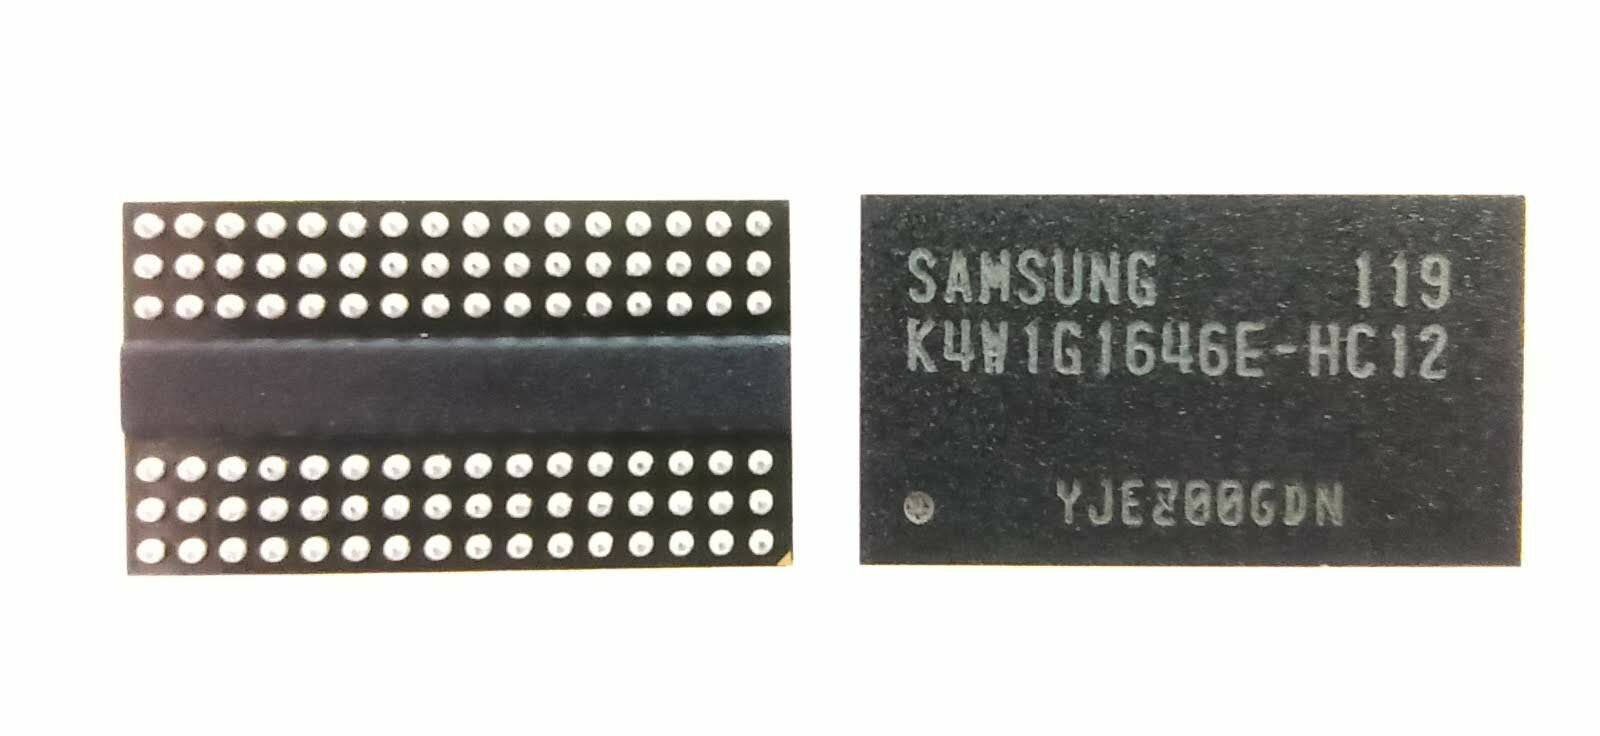 Видео память Samsung 1600мГц 1Гбит GDDR3 [K4W1G1646E-HC12]